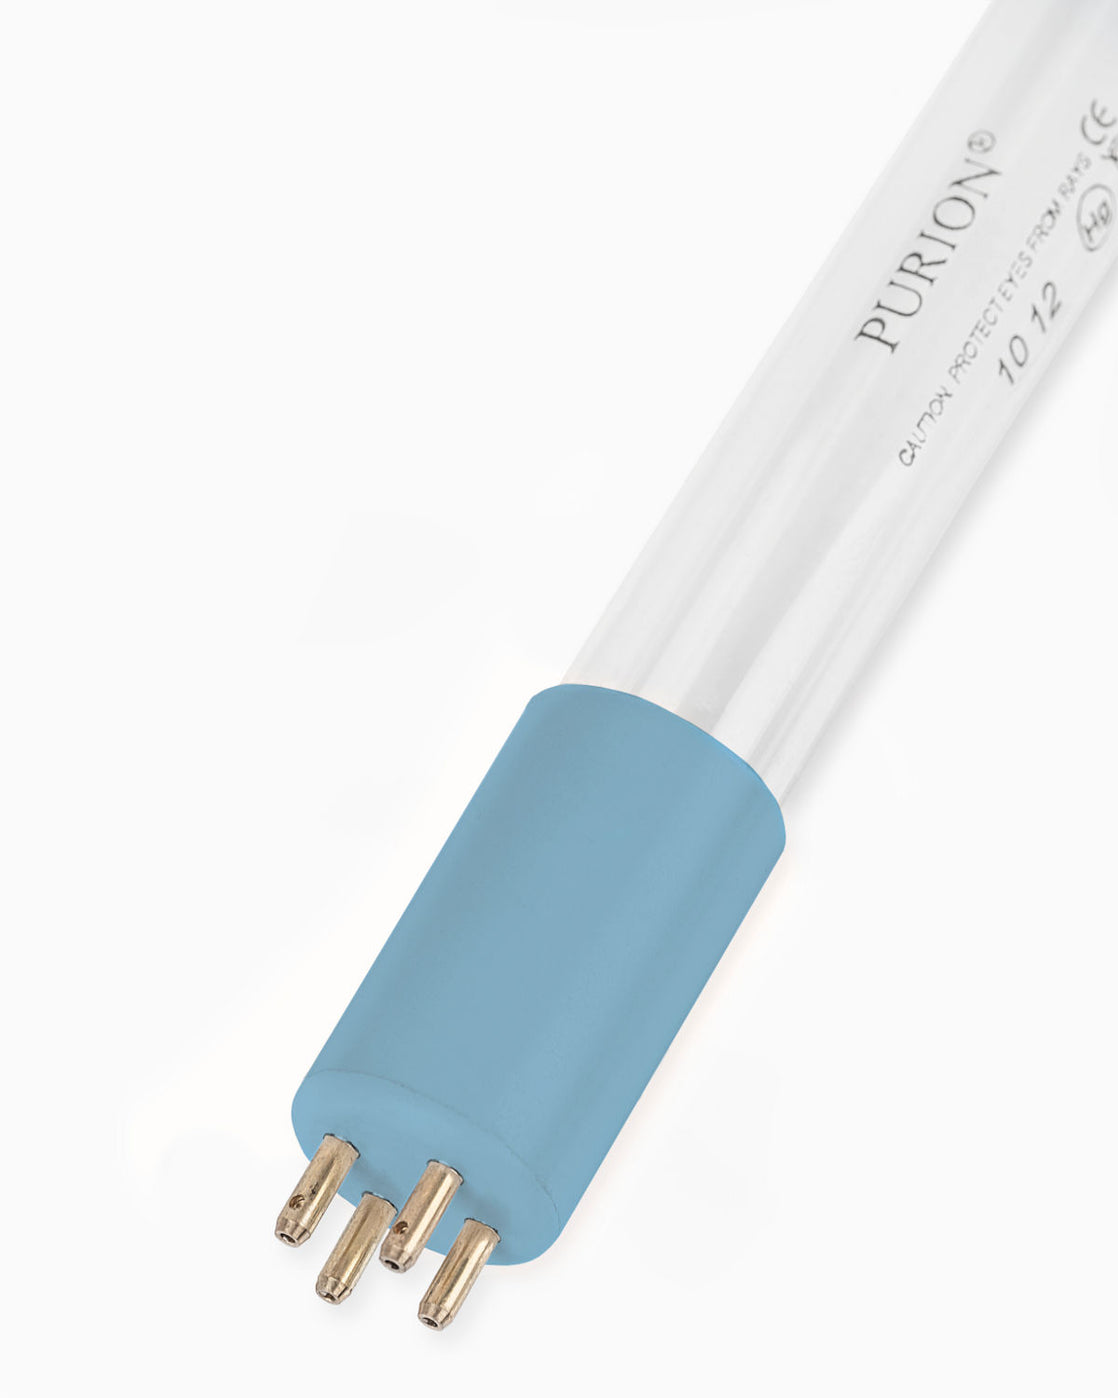 Eine blaue UV-Lichtröhre der PURION GmbH auf weißem Hintergrund.